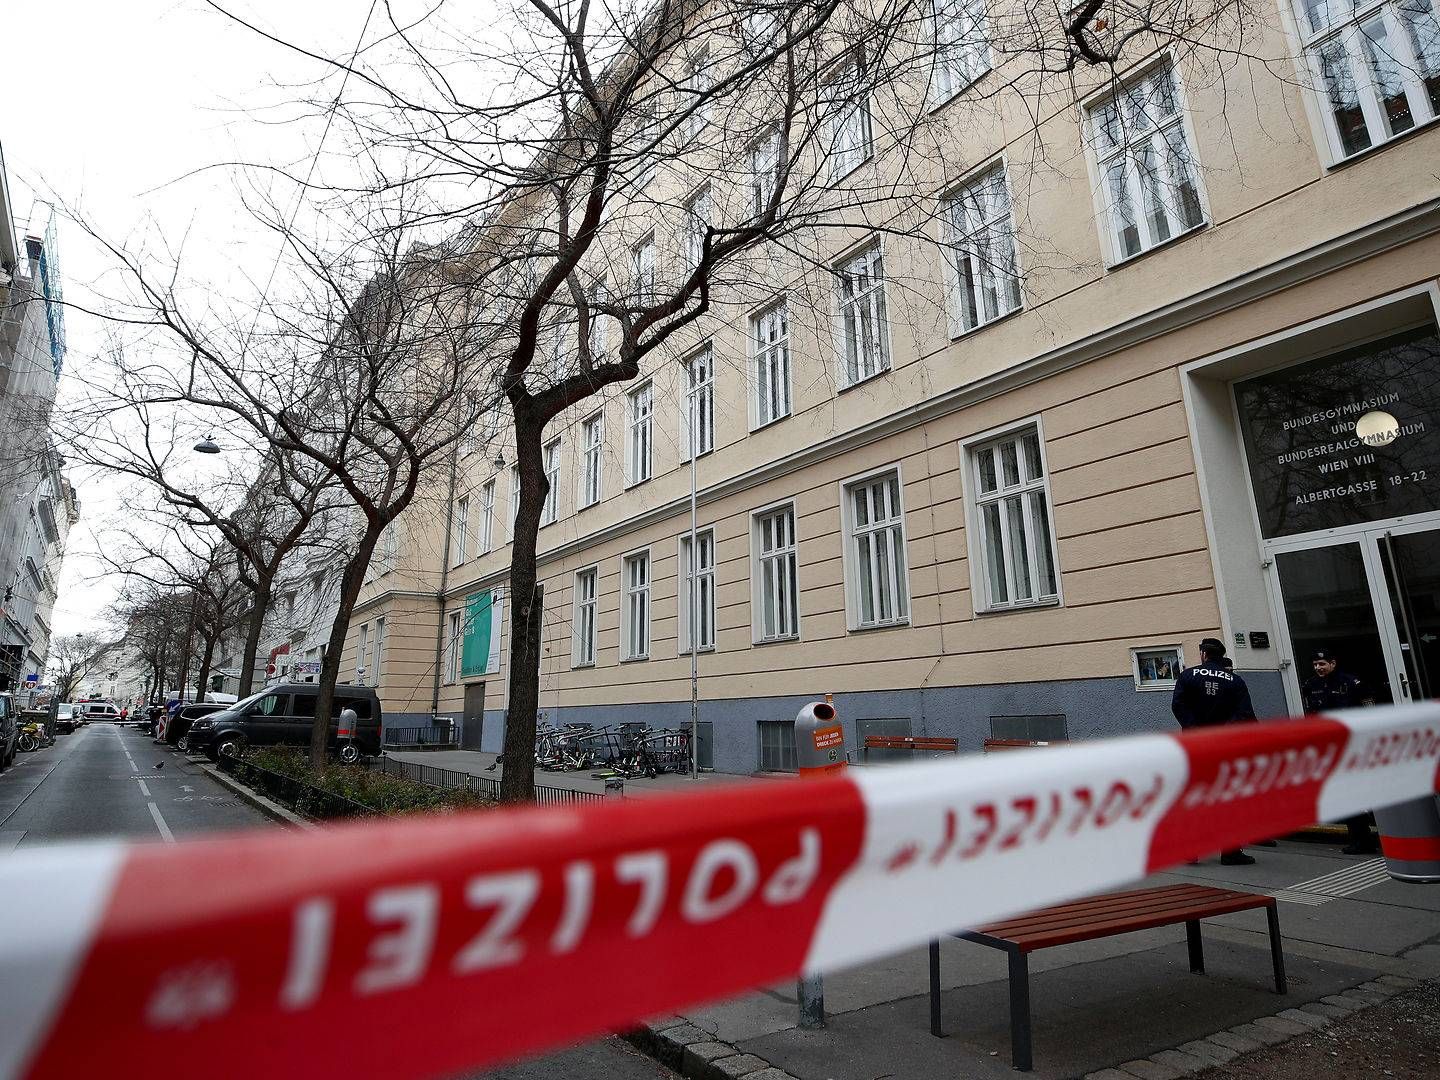 Coronavirussen har også ramt Østrig, hvor politiet lukkede en skole i Apeirons hjemby Wien ned, efter at en lærer, der for nylig havde besøgt det nordlige Italien, udviste tegn på covid-19. | Foto: Lisi Niesner / Reuters / Ritzau Scanpix